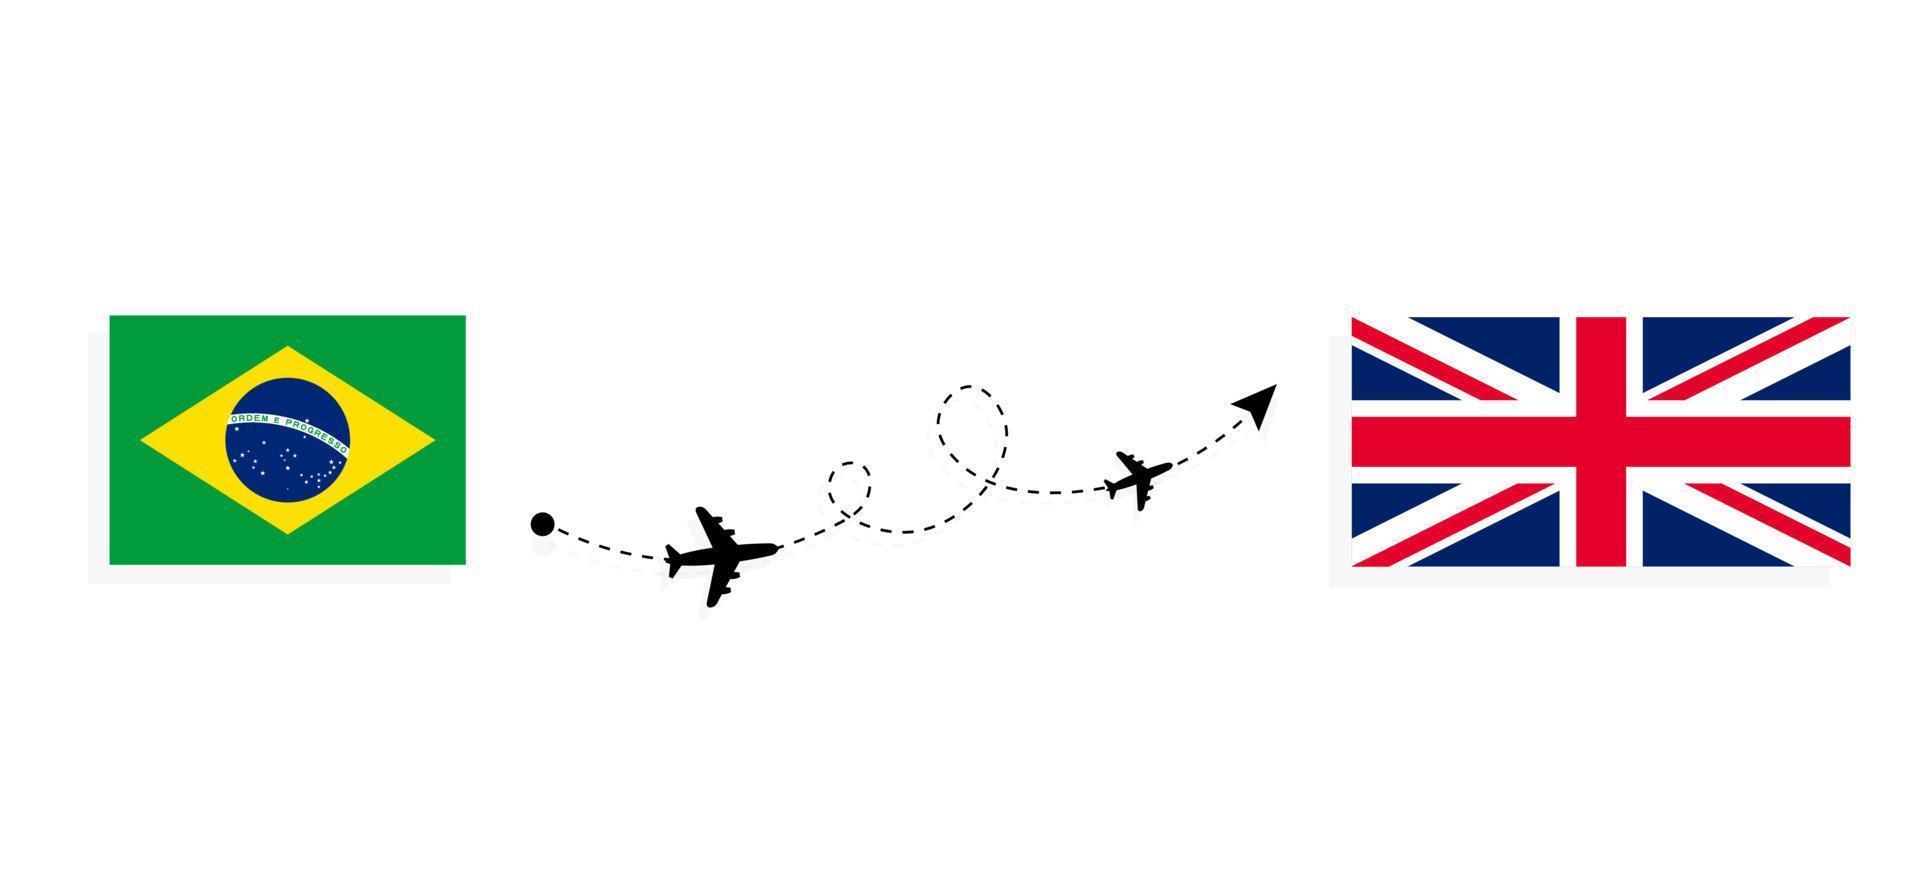 vol et voyage du brésil au royaume-uni de grande-bretagne par concept de voyage en avion de passagers vecteur